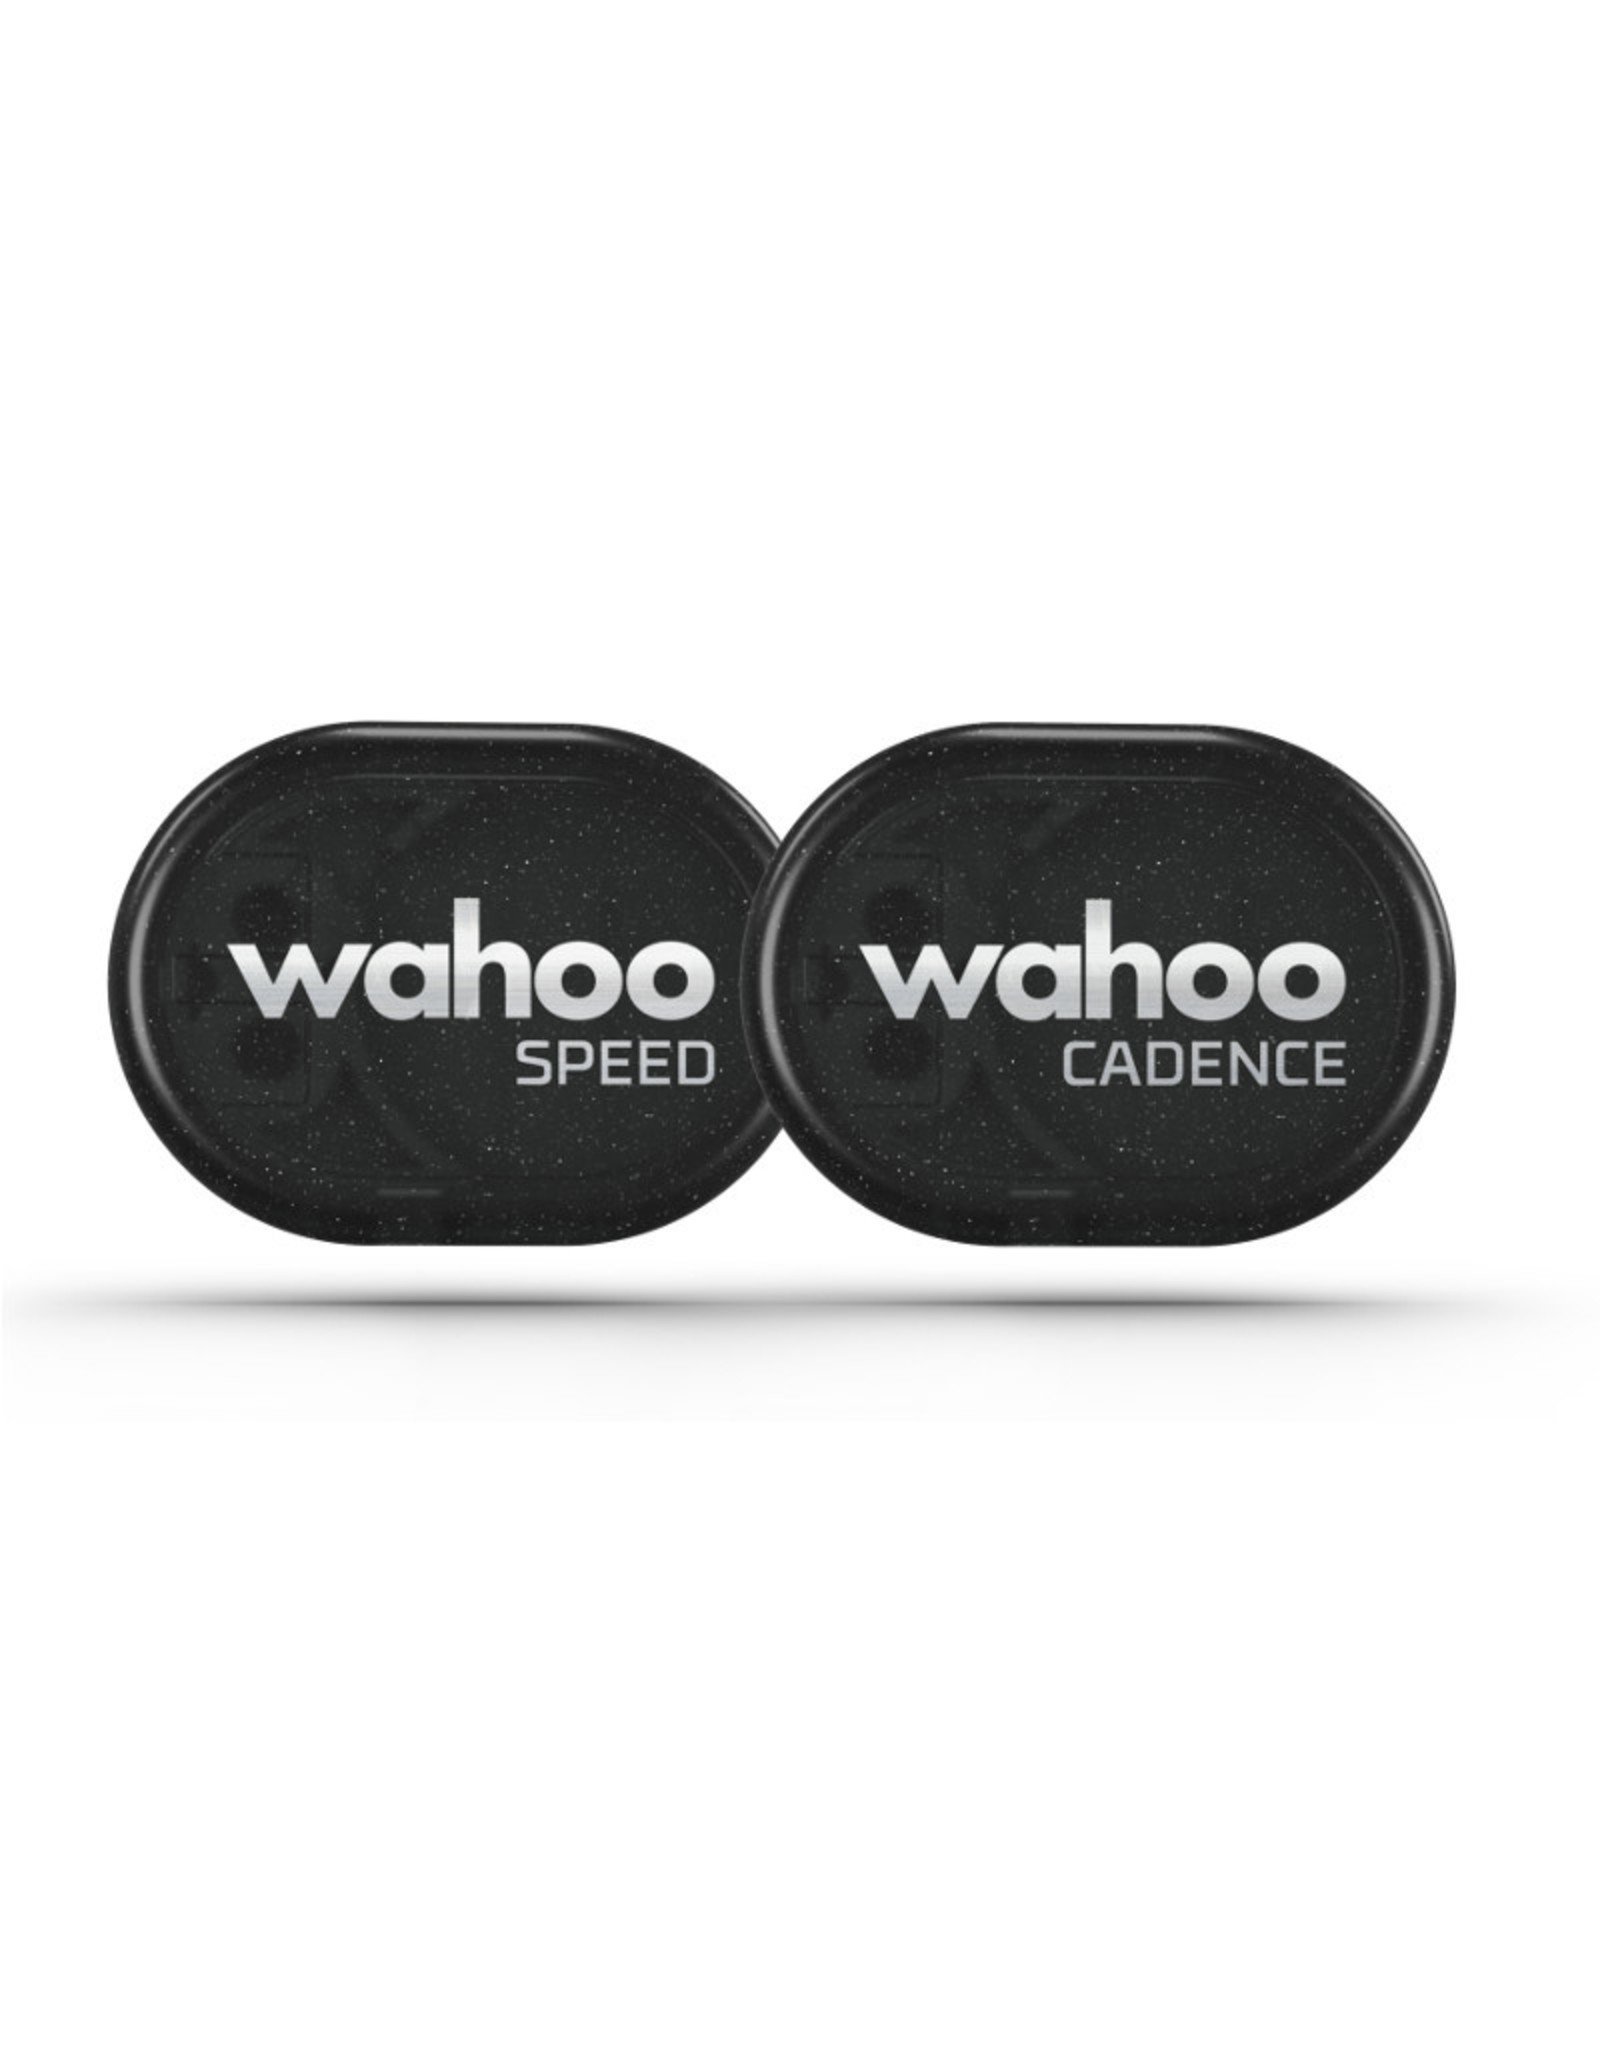 wahoo pedal sensor